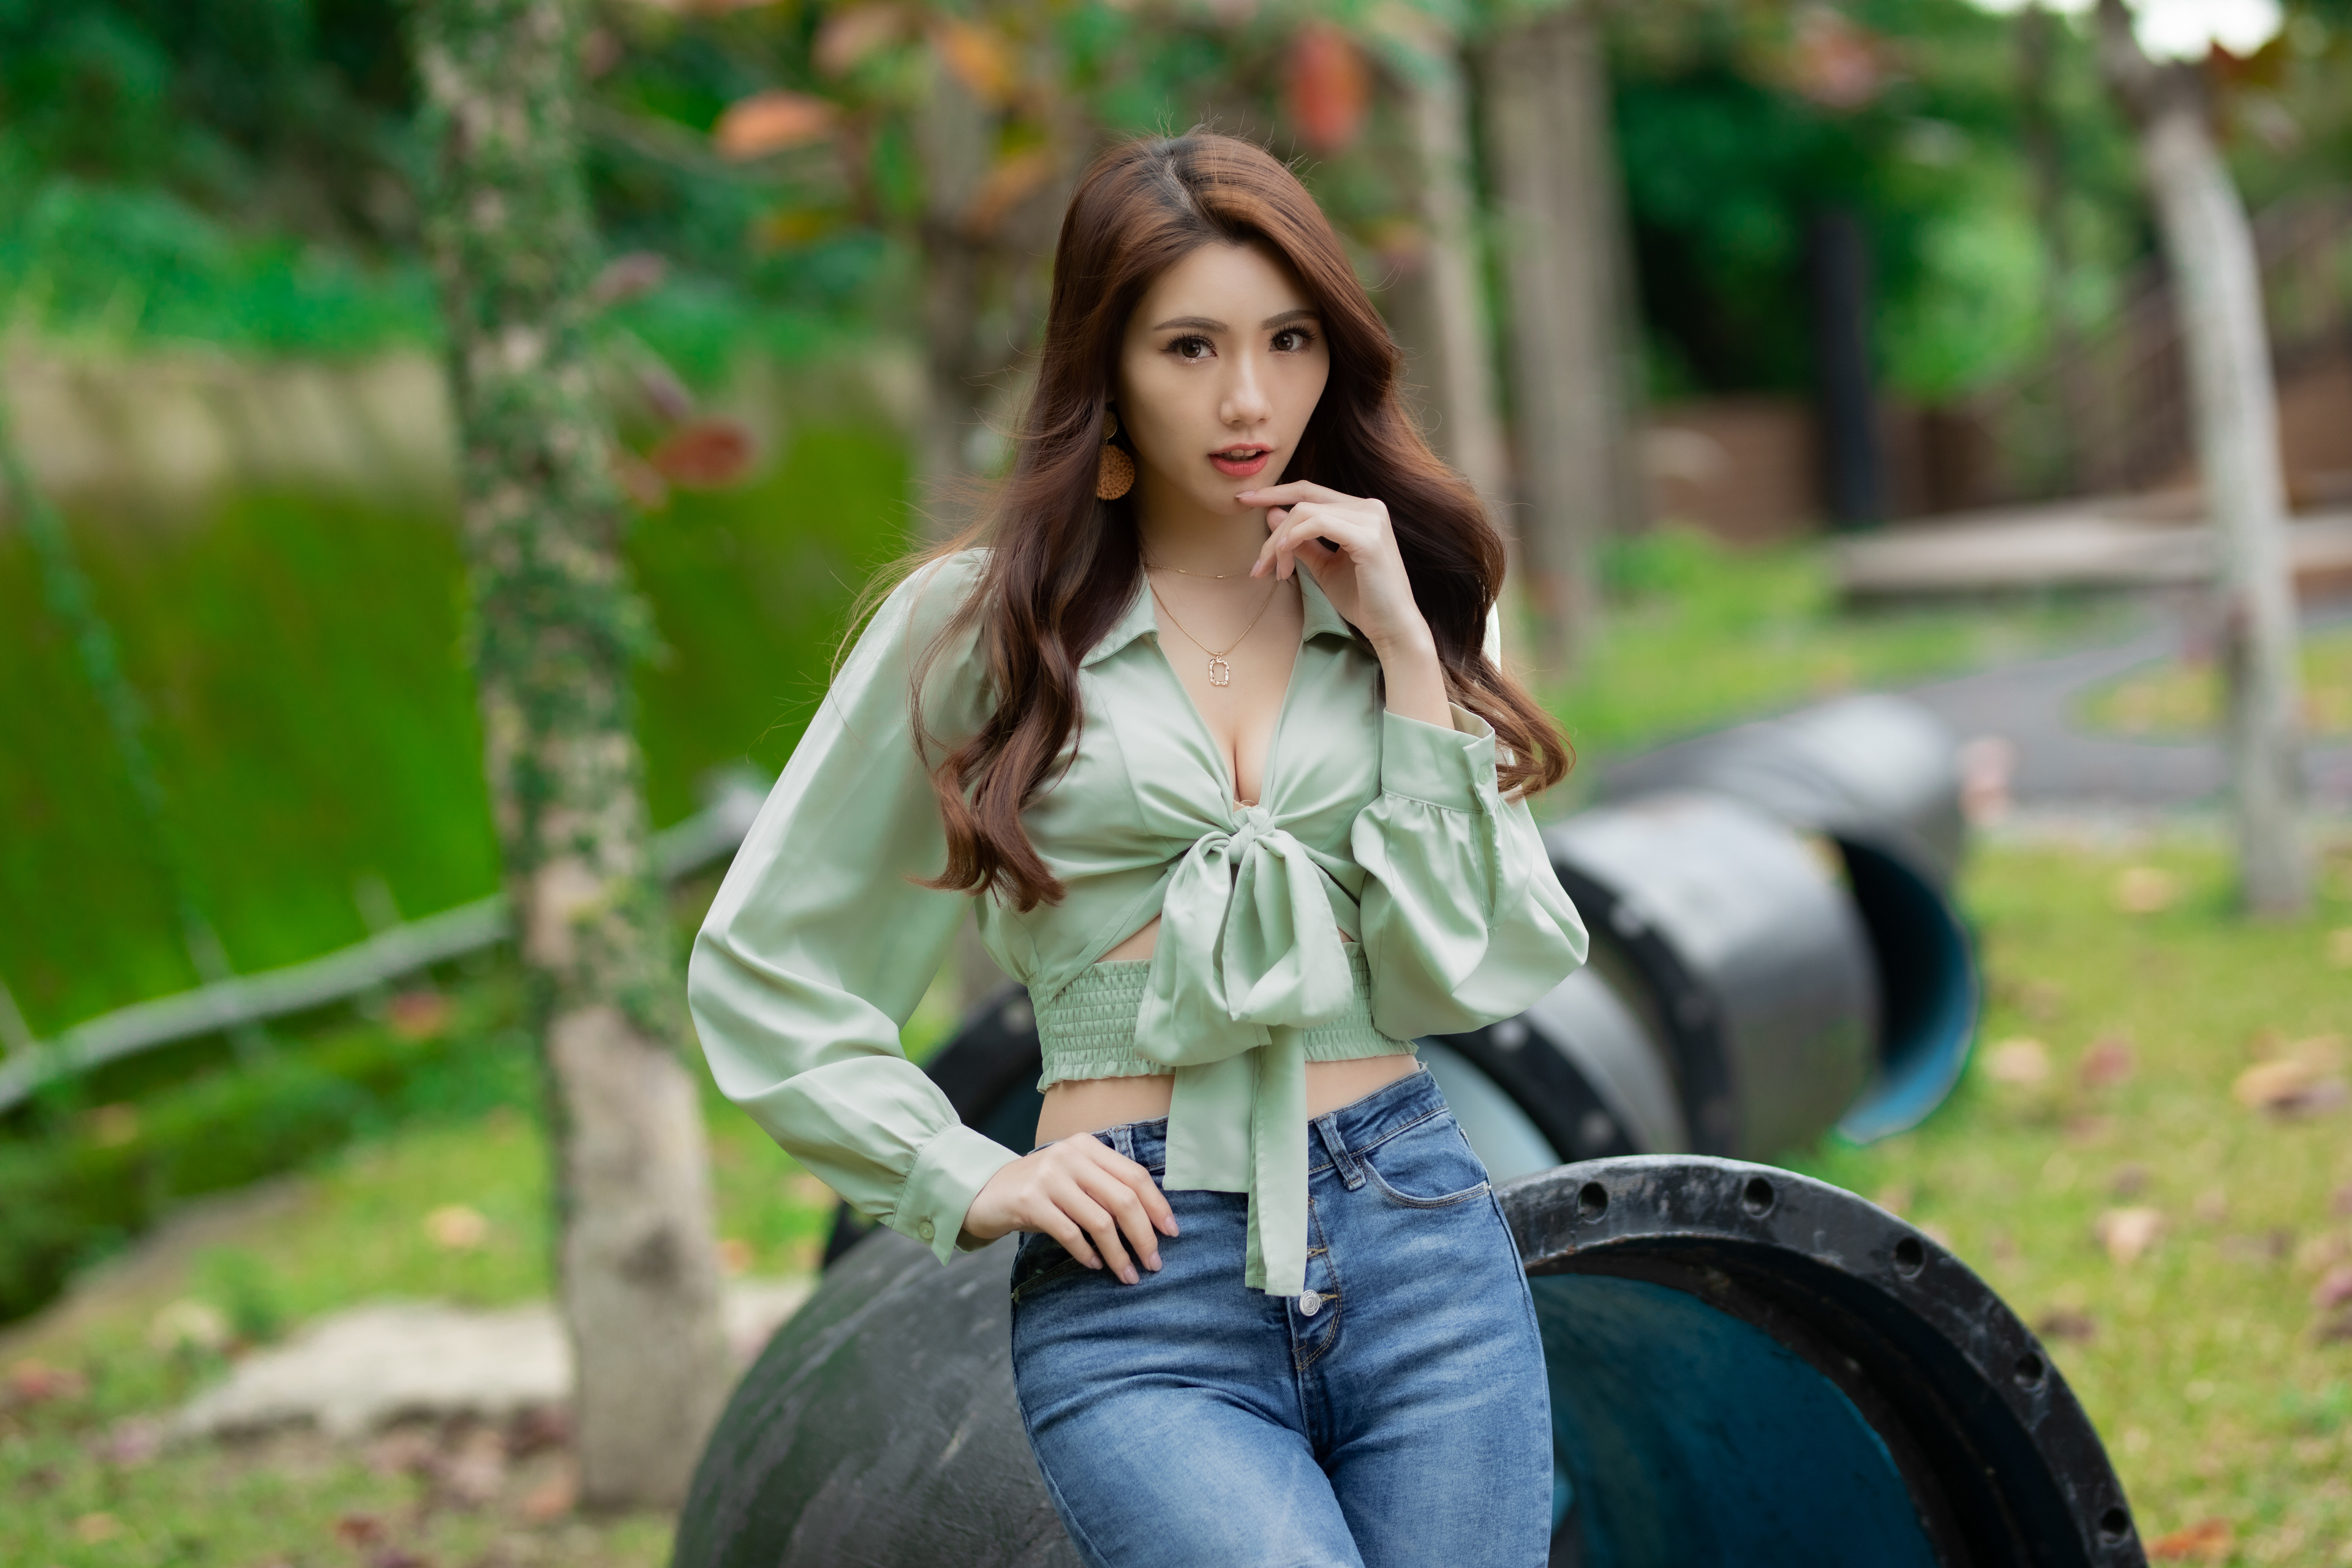 Asian Model Women Women Outdoors Long Hair Brunette Depth Of Field Jeans Blouse Earring Leaning Neck 3840x2560